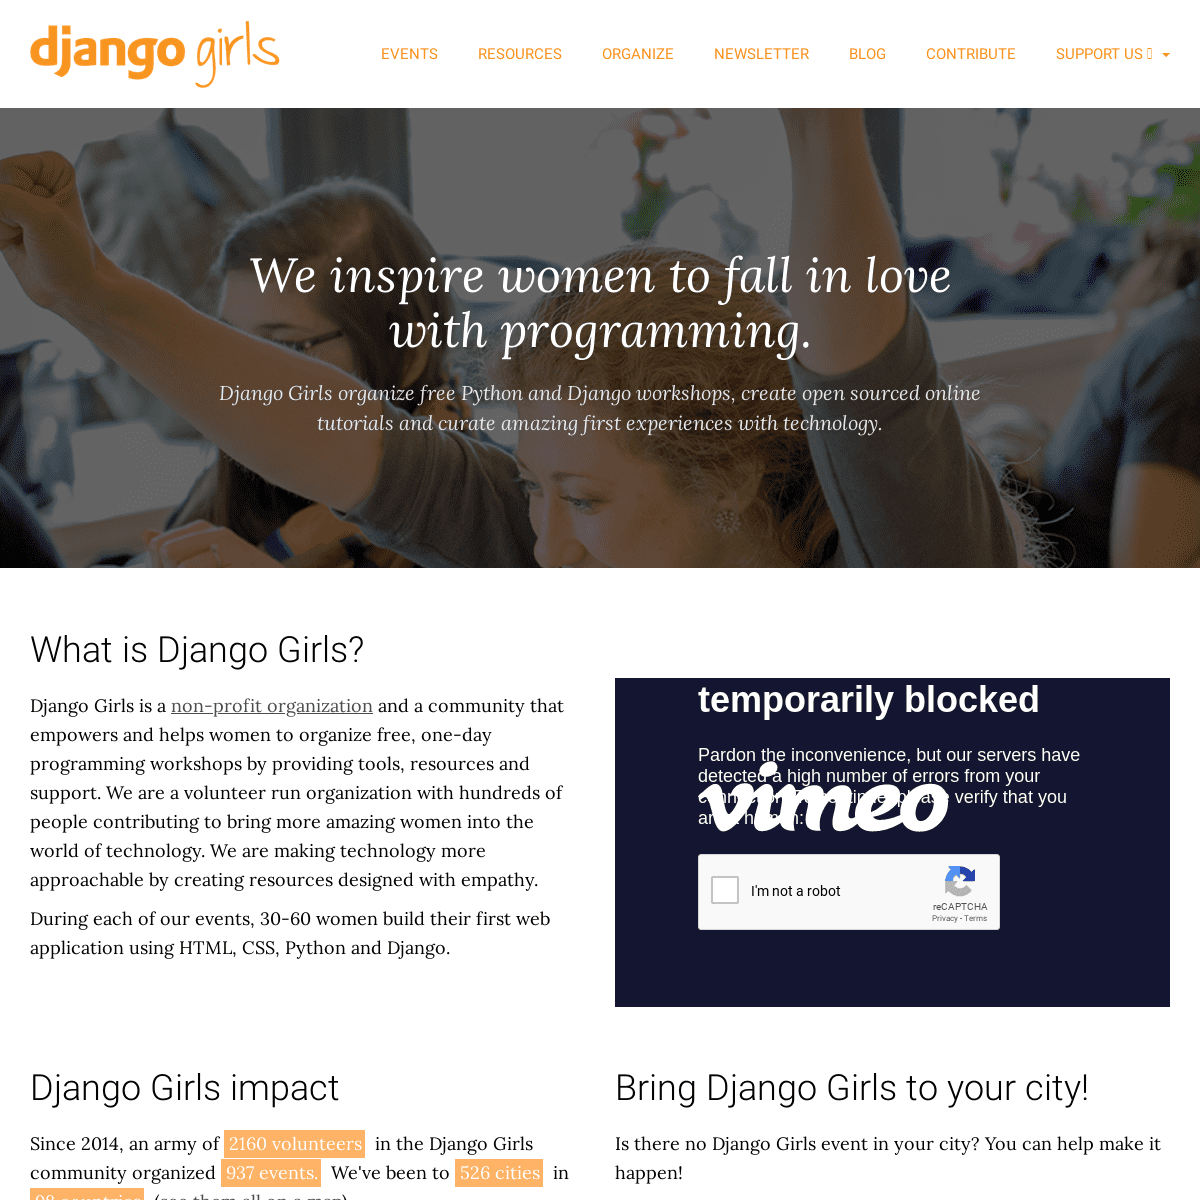 A complete backup of djangogirls.org